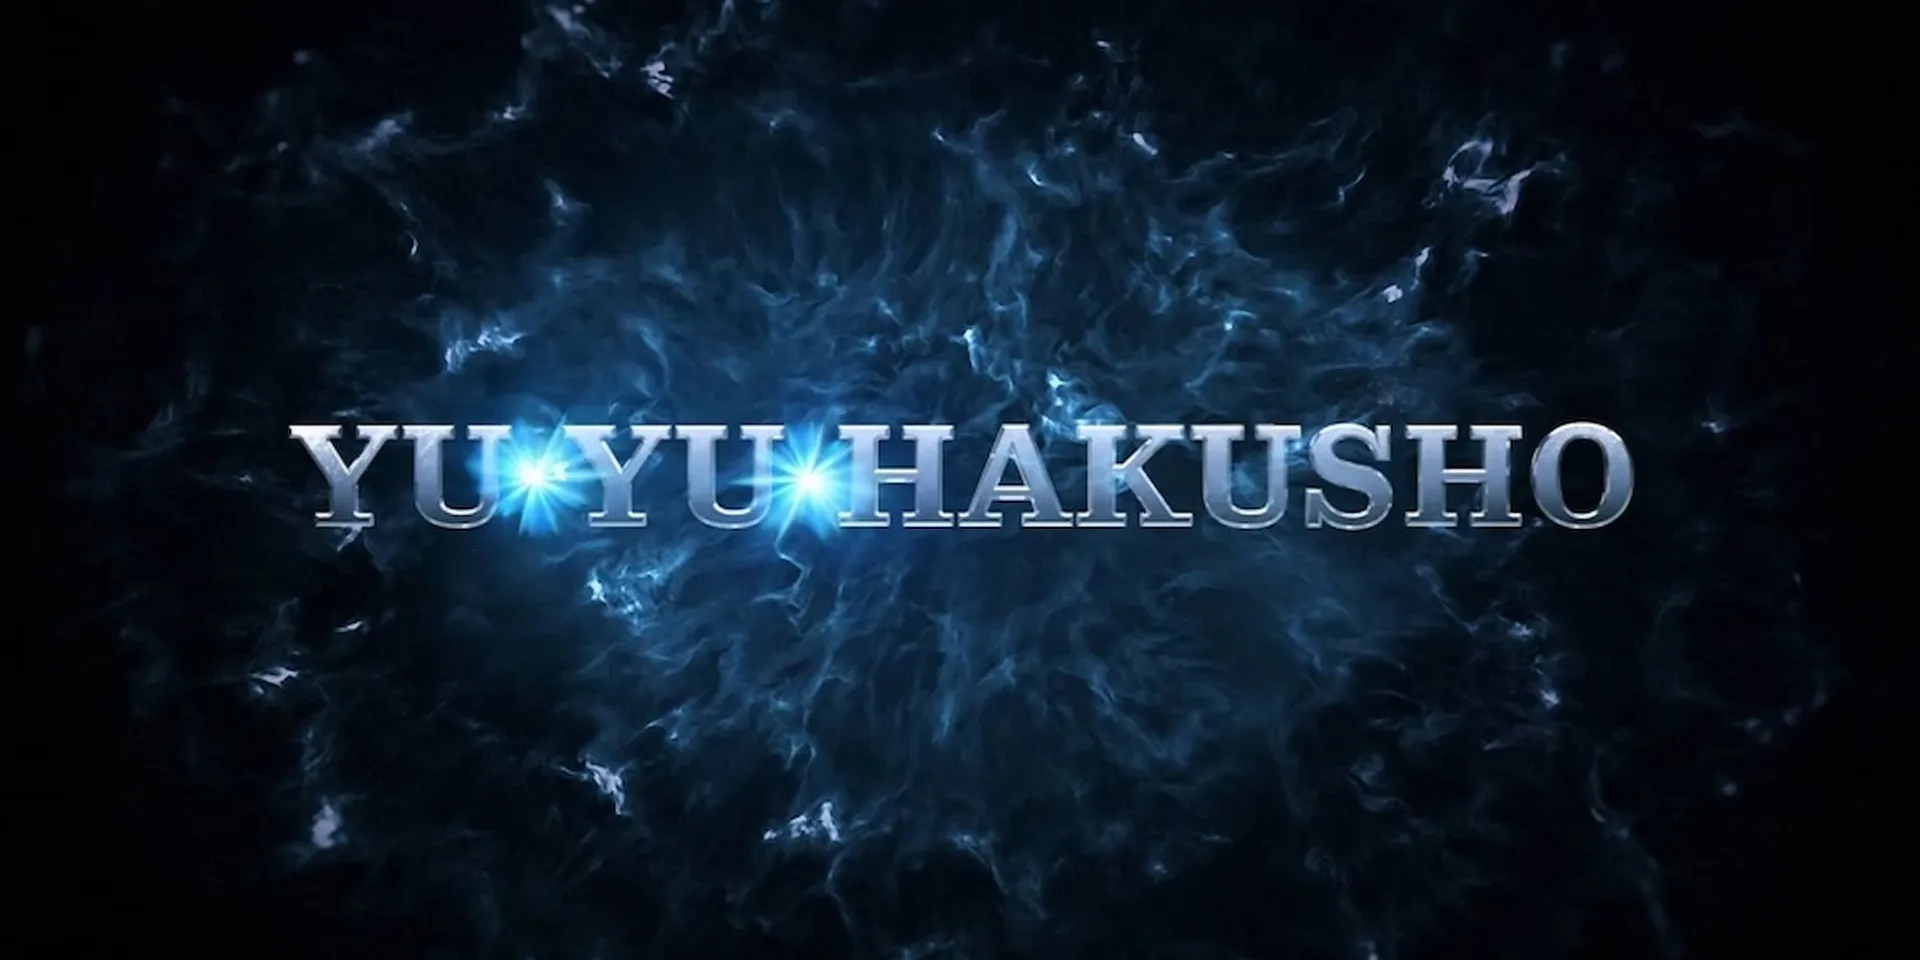 Live-action de Yu Yu Hakusho estreia na Netflix! Confira os episódios